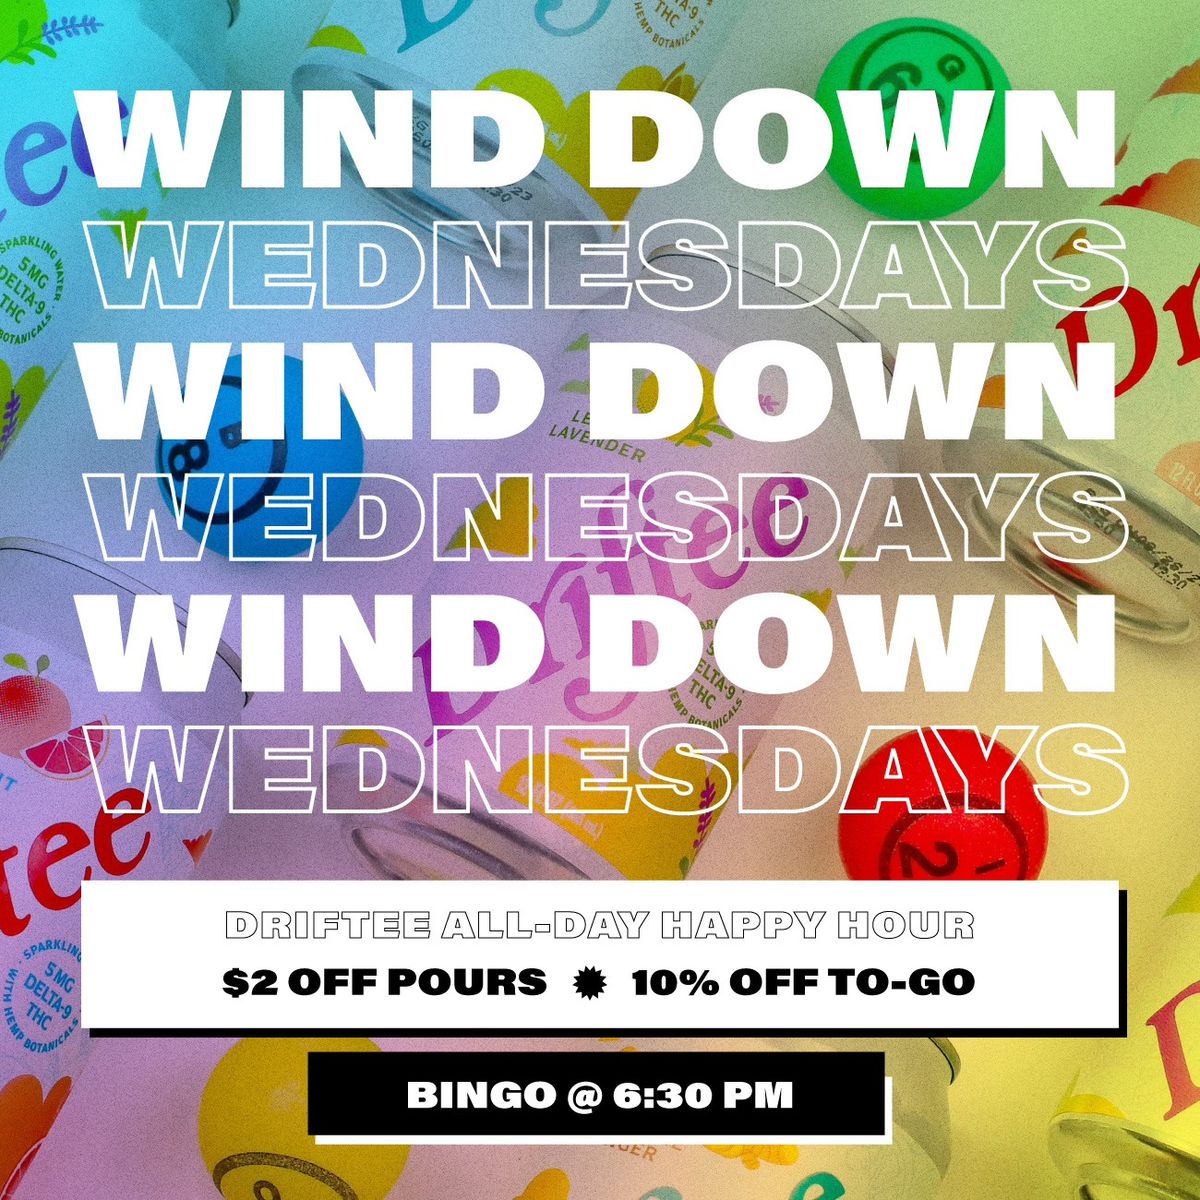 Wind Down Wednesday: Baby Got Bingo + All Day Driftee Happy Hour